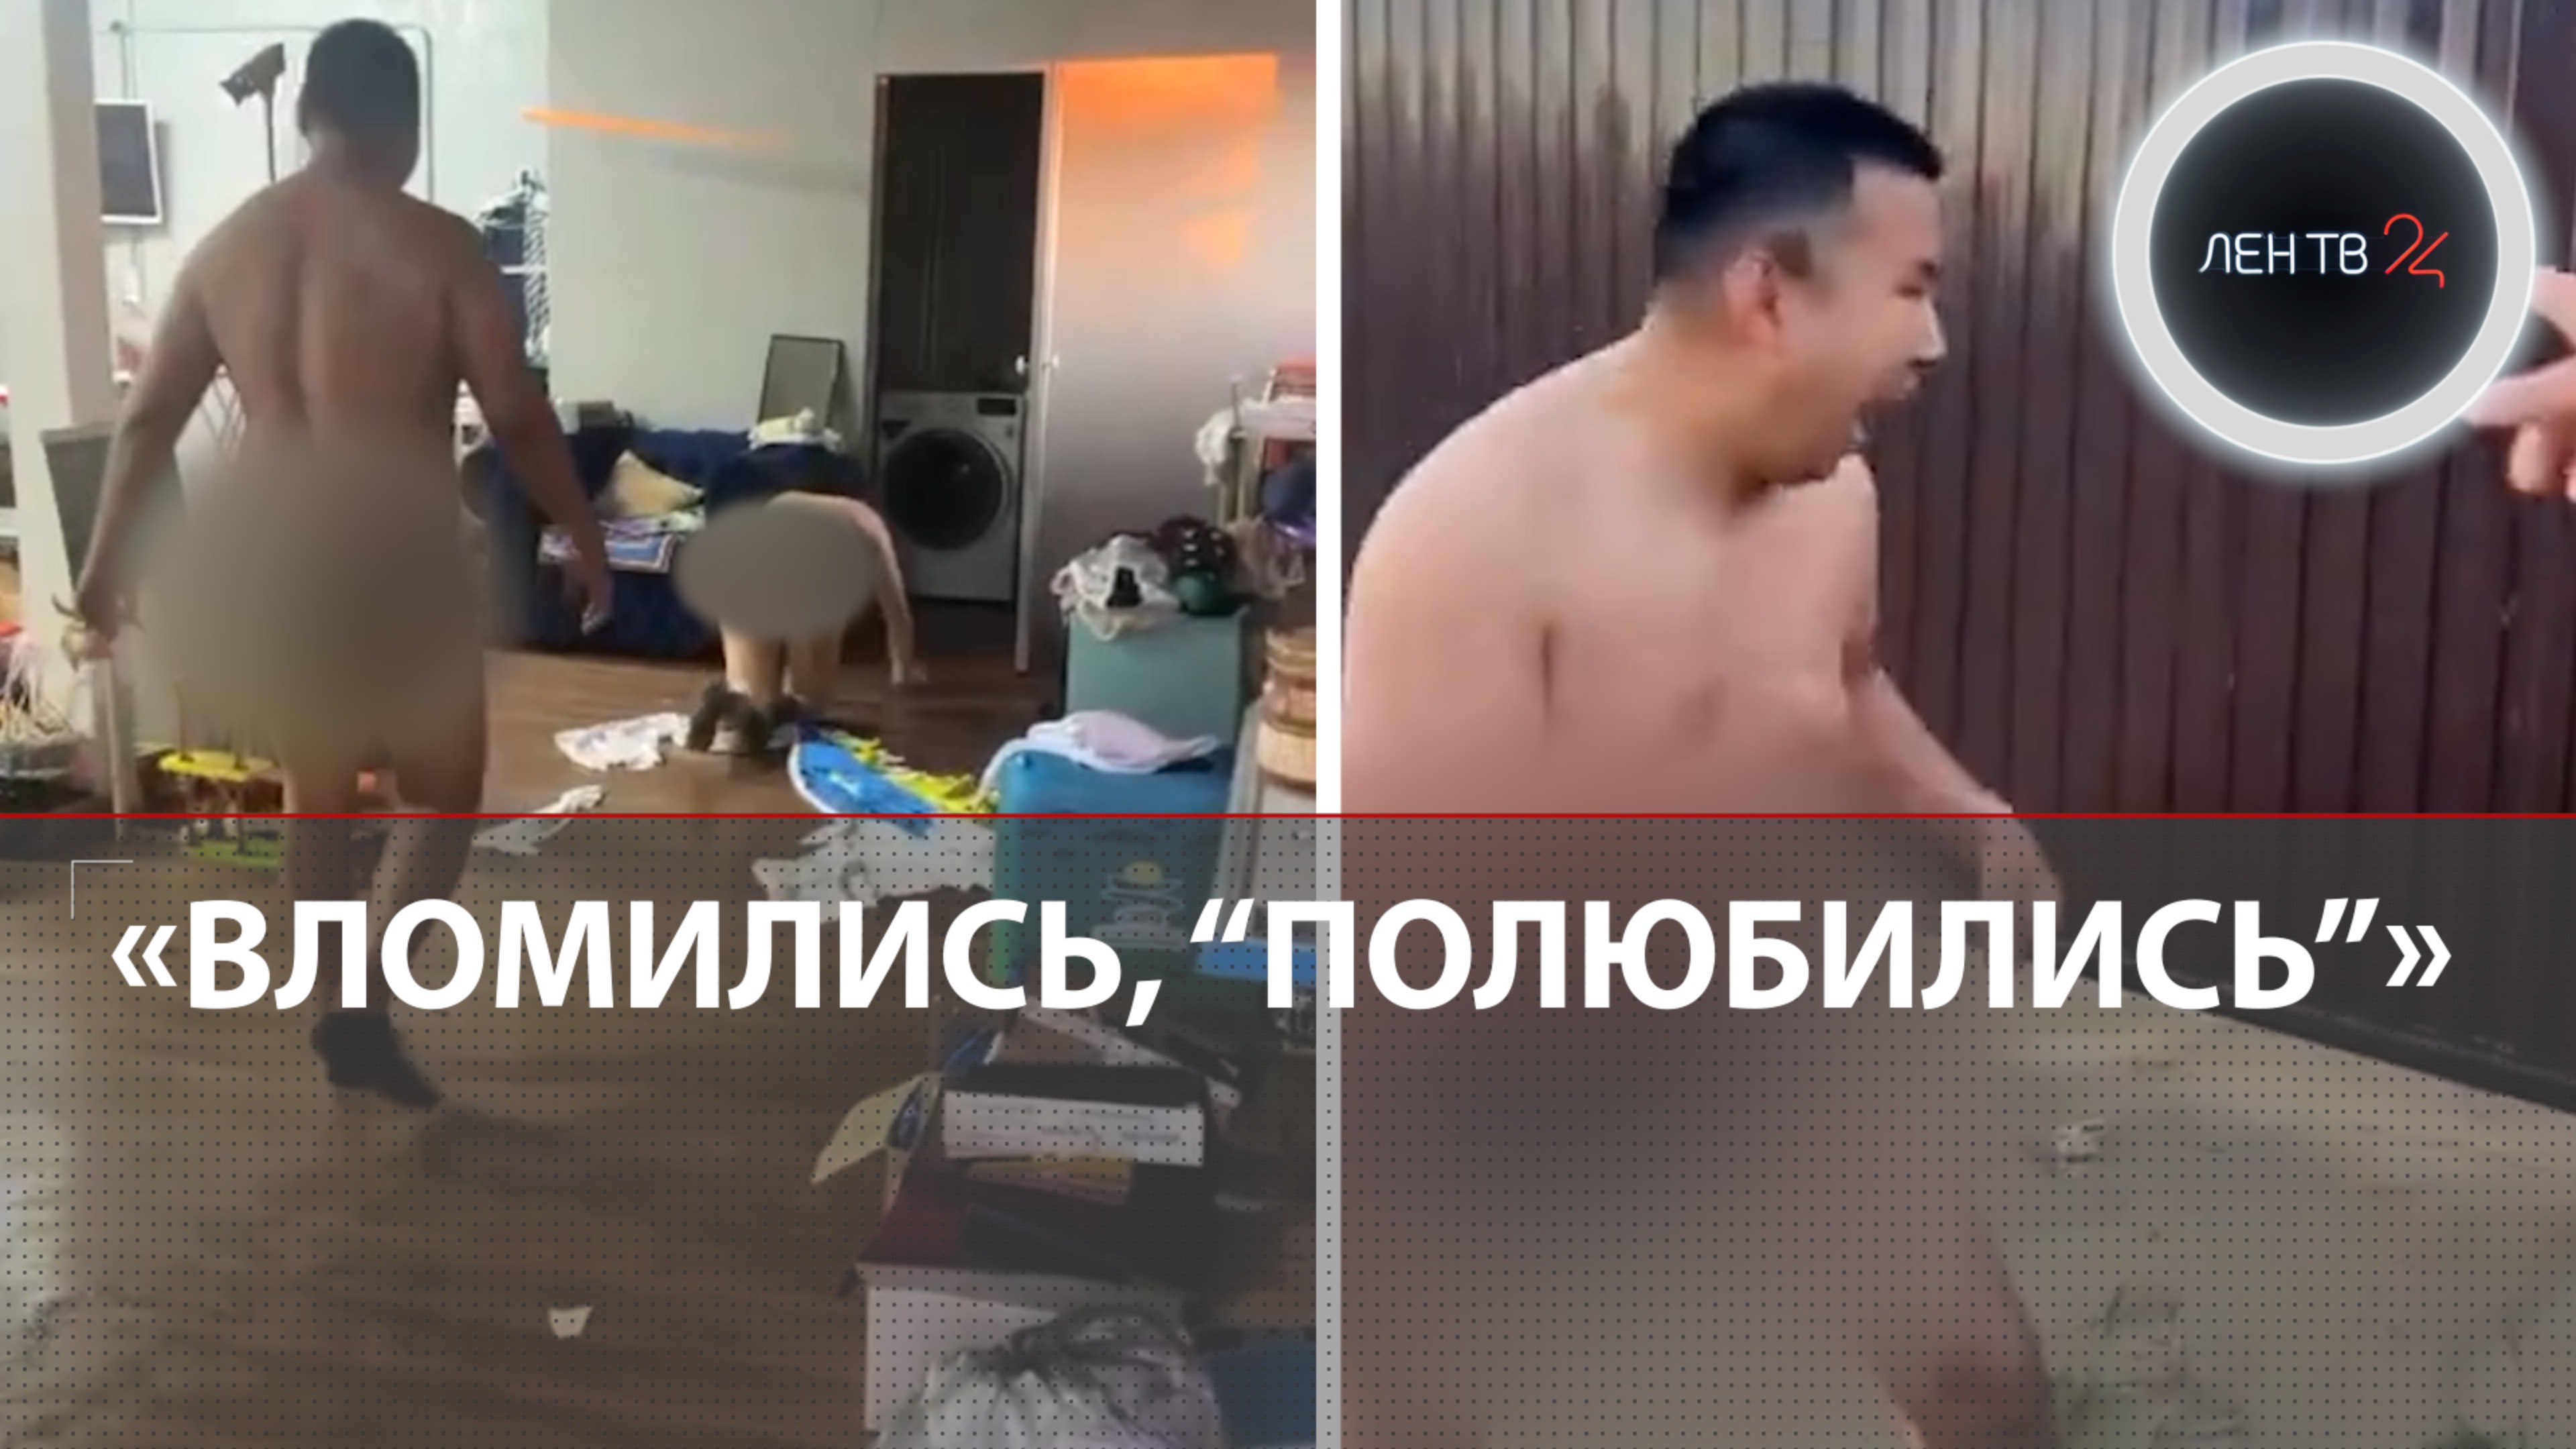 Полицейский напился, вломился в чужой дом и развлекся там с женой: Скандал в Якутии